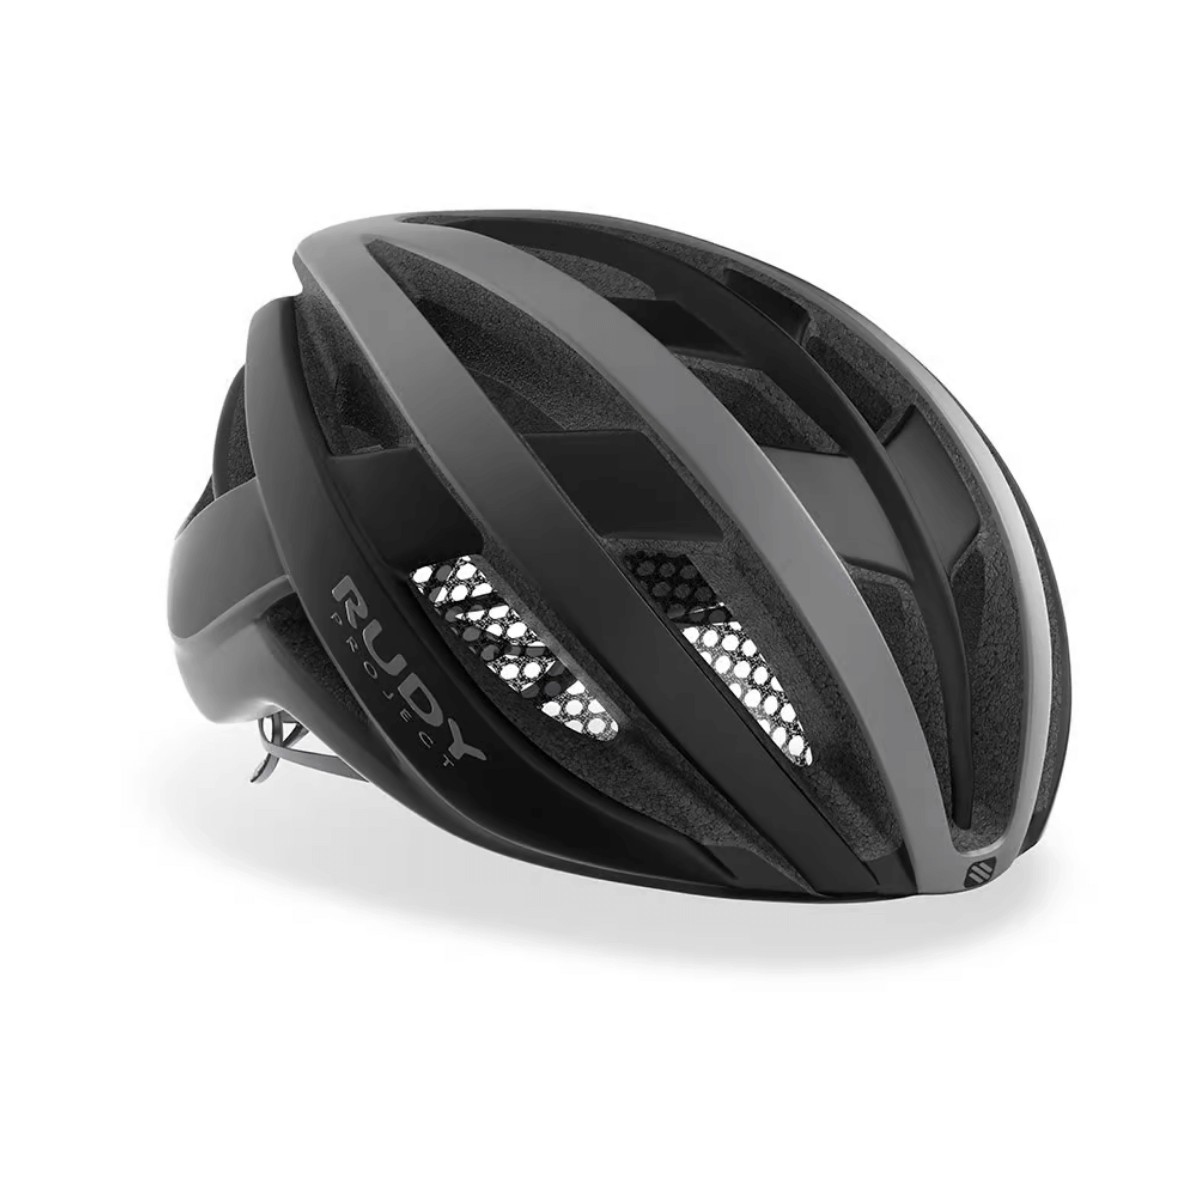 Rudy Project Venger Helmet Matte Black, Size M (55-59 cm)